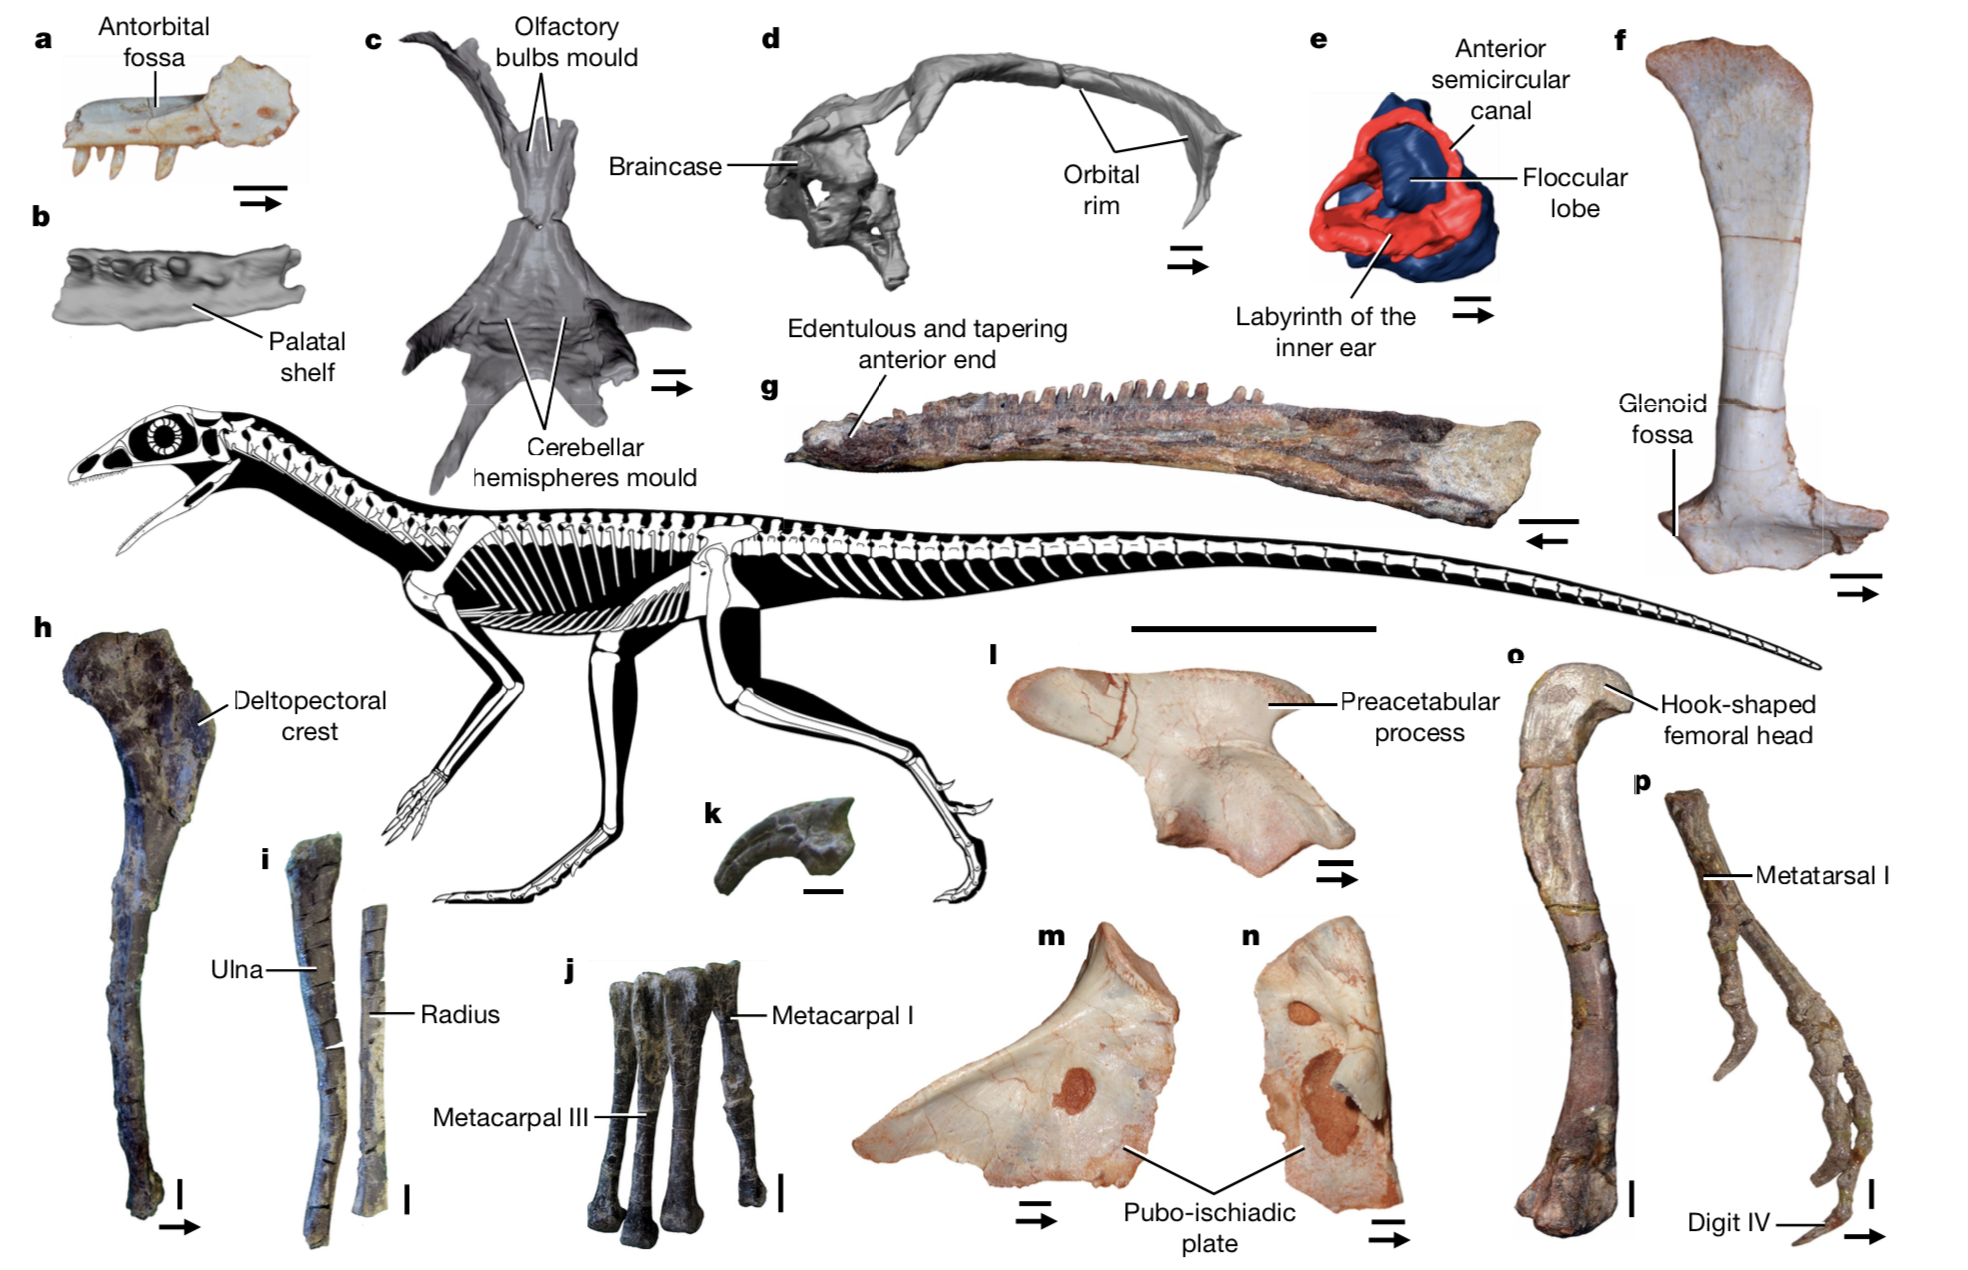 Les squelettes partiels de Lagerpetidae (crâne, avant-bras, vertèbres) récemment découverts aident aujourd'hui à montrer les similitudes qui existent entre ptérosaures et Lagerpetidae. [Université de Fribourg/Nature - Serjoscha Evers et al.]